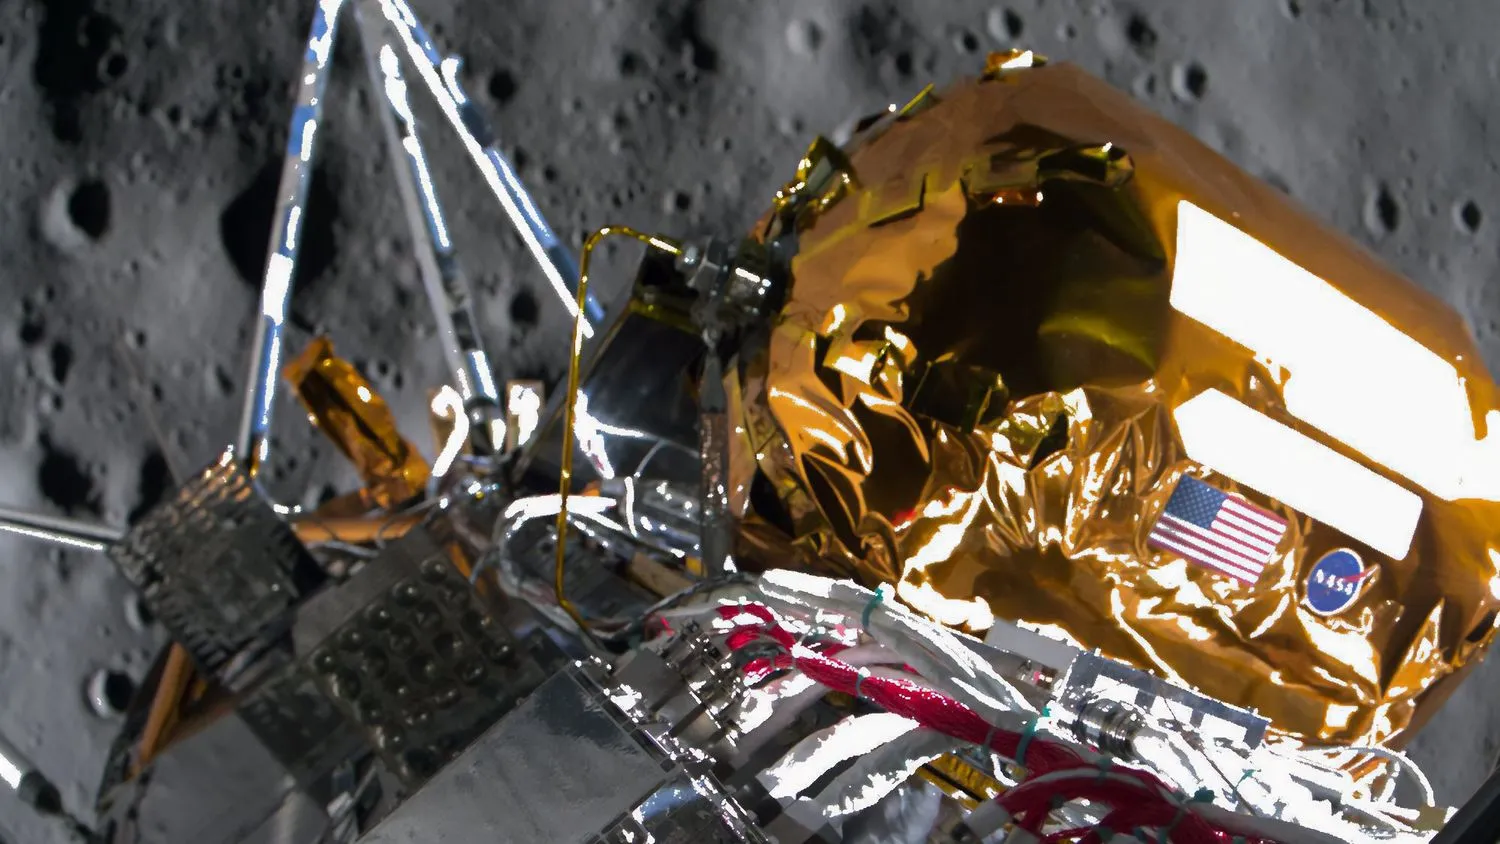 Nahaufnahme eines goldenen und silbernen Raumschiffs, das den Mond umkreist, mit grauem Schmutz und Kratern im Hintergrund.